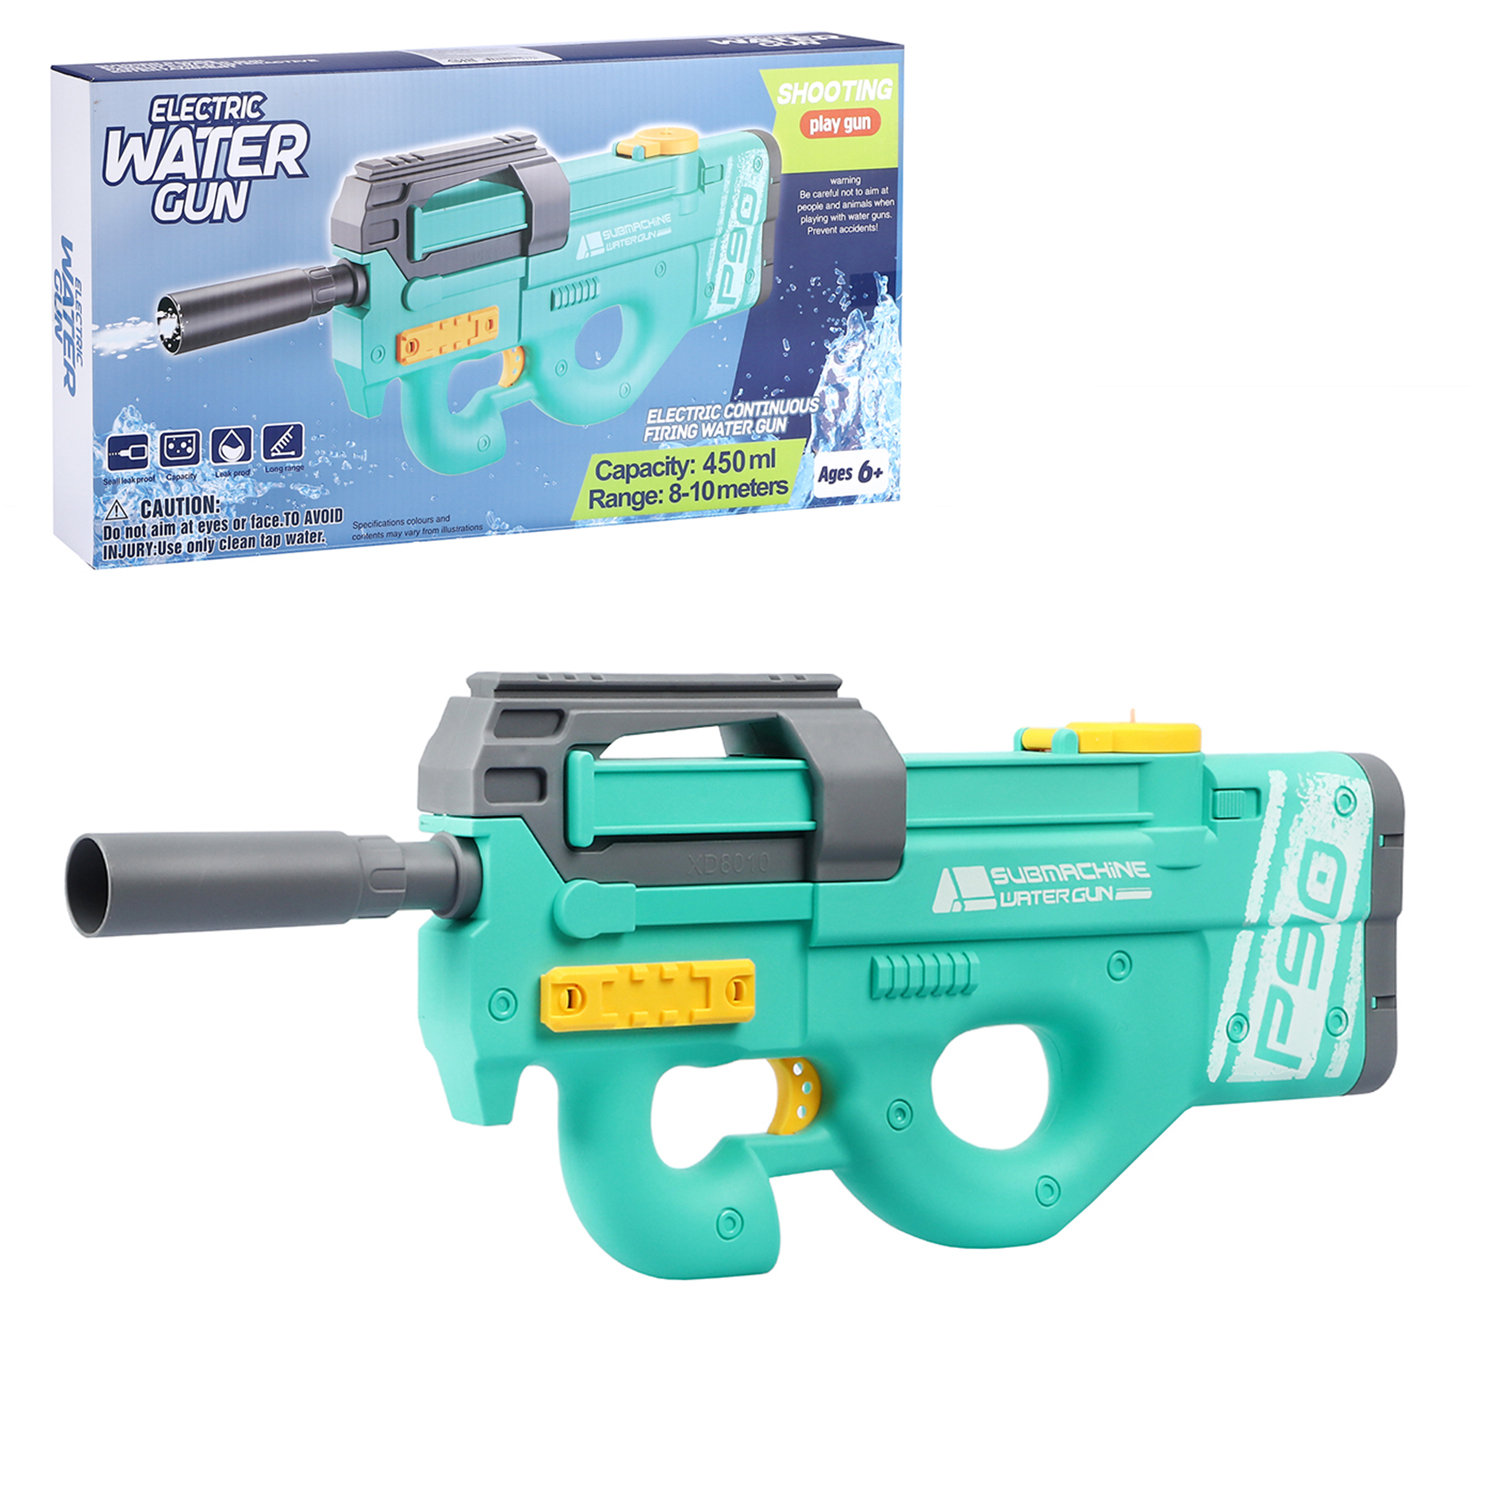 Водный пистолет игрушечный, электропистолет, на аккумуляторе, бирюзовый, JB0211237 водяное оружие на аккумуляторе пистолет игрушечный с функцией спрея водный бой jb0211498